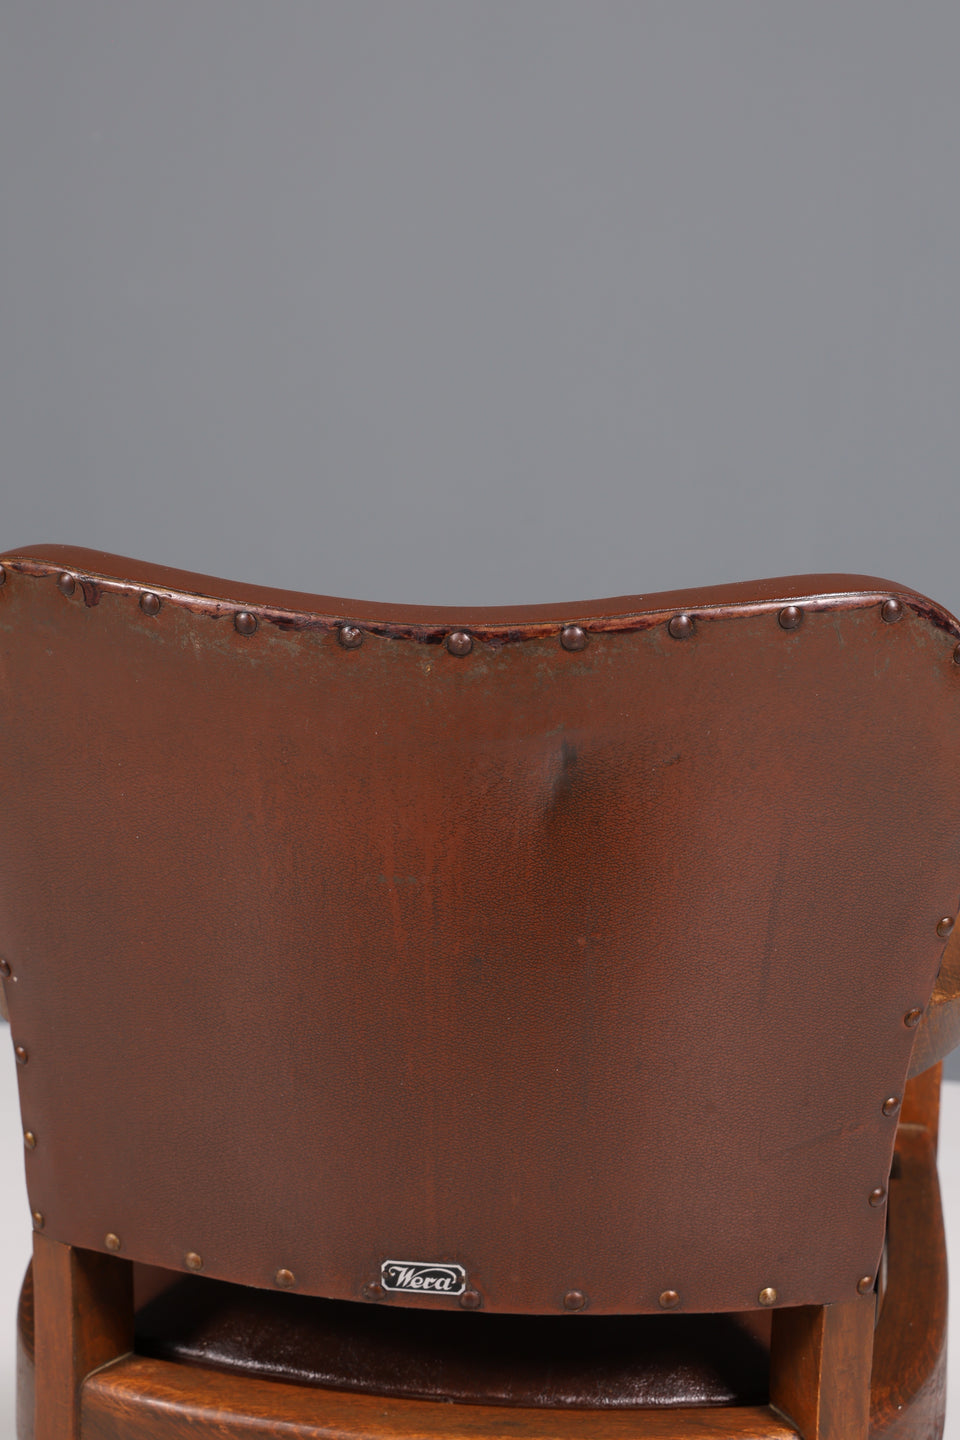 Wunderschöner Friseurstuhl Klappsitz Stuhl Art Deco Eiche Holz 3 von 3